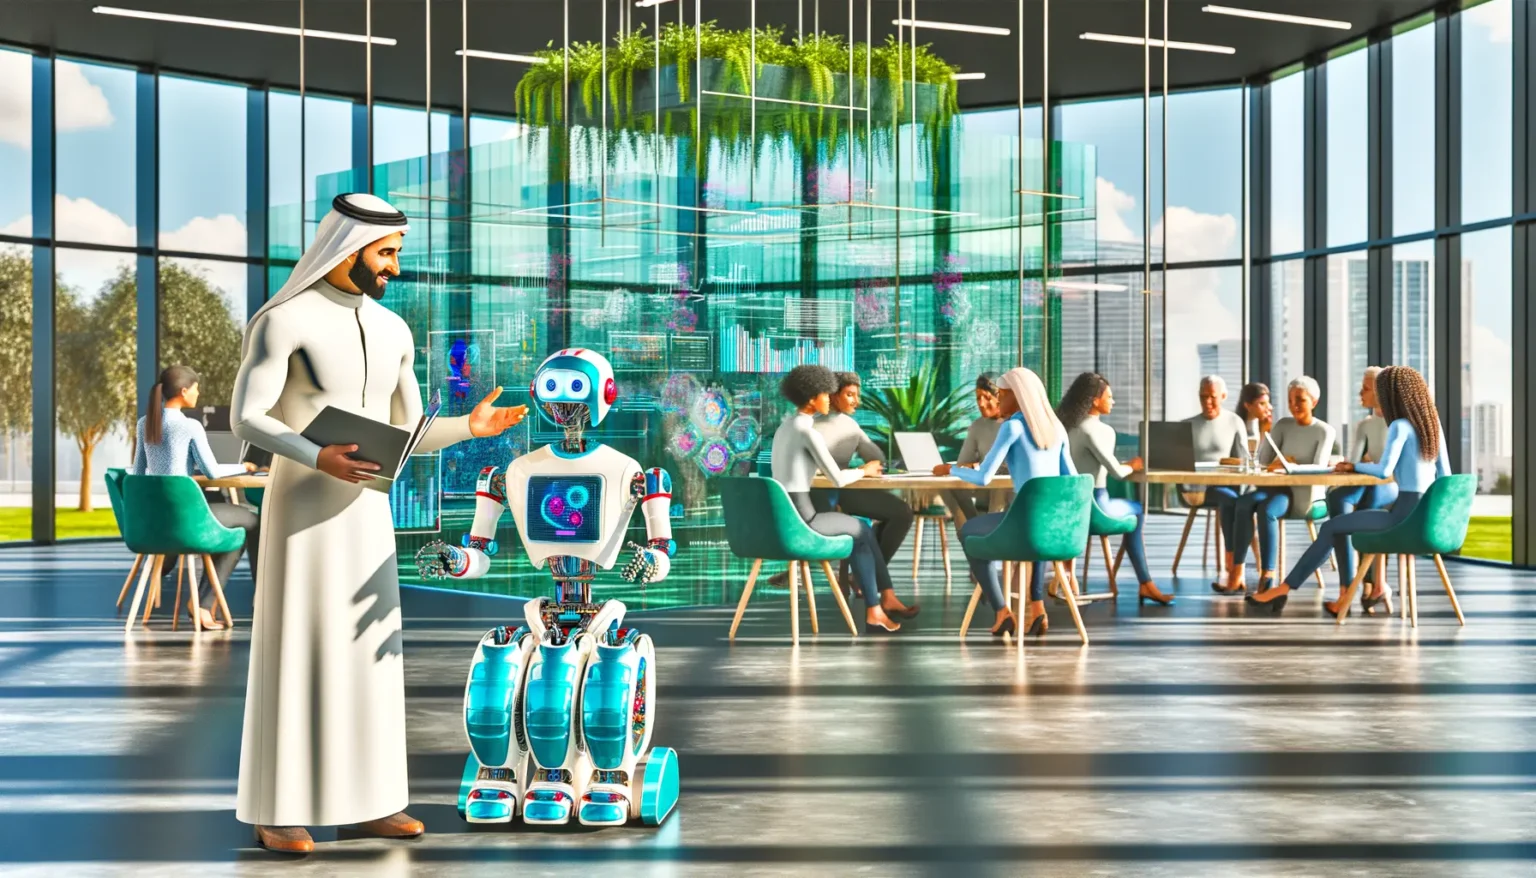 Ein Mann in traditioneller arabischer Kleidung interagiert mit einem humanoiden Roboter in einer modernen Bürolandschaft mit Glaswänden und üppigen hängenden Pflanzen. Im Hintergrund arbeiten Menschen in kleinen Gruppen an Tischen. Draußen sind Wolkenkratzer und ein blauer Himmel sichtbar.